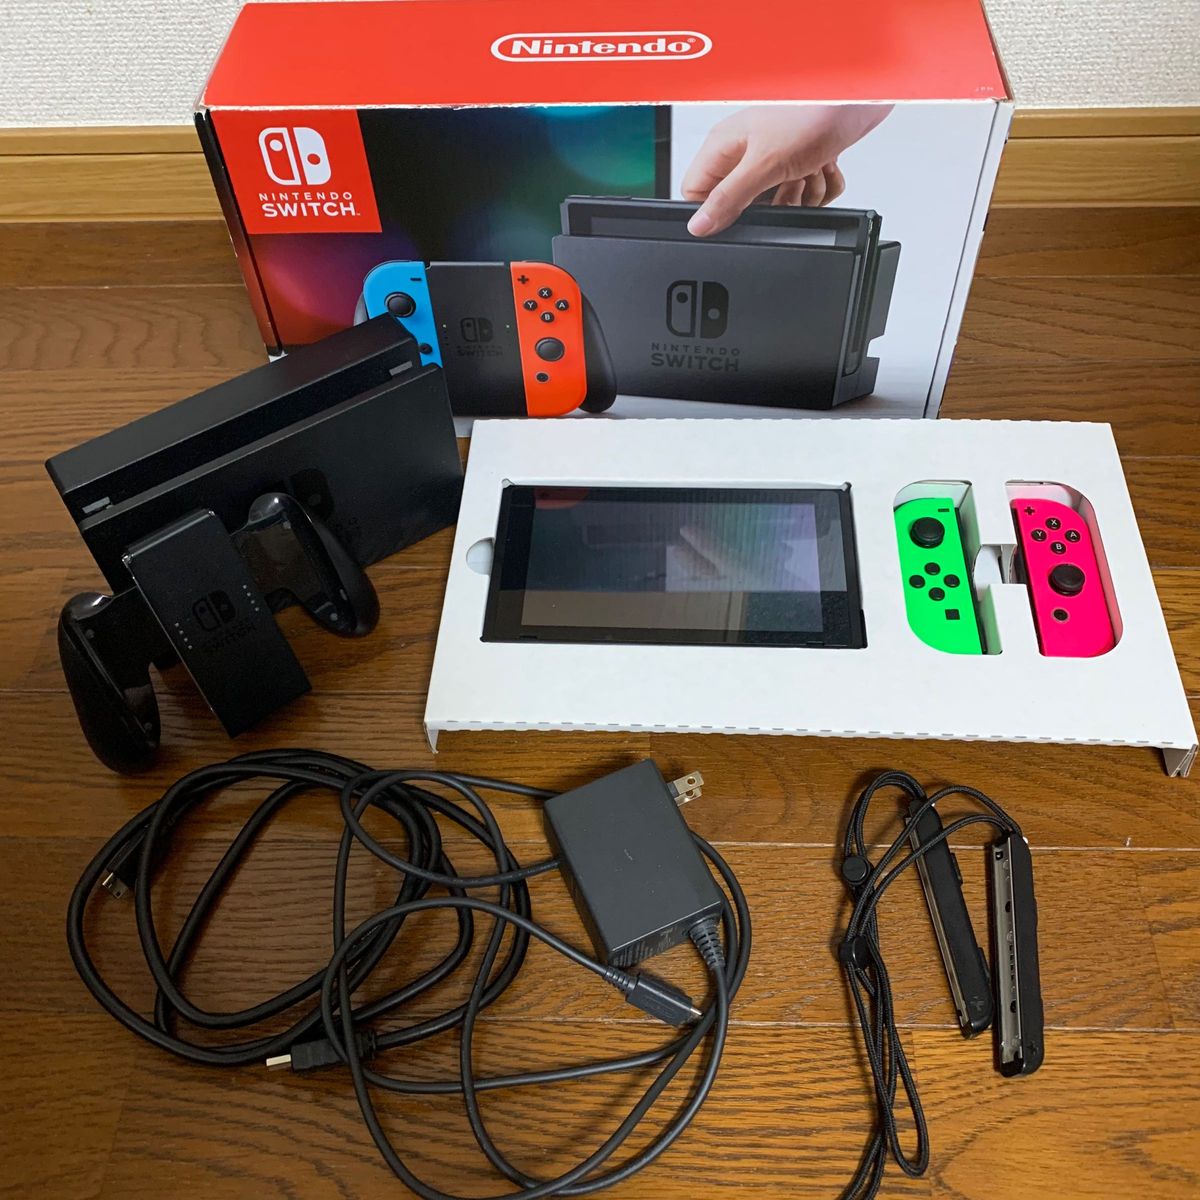 【動作確認済み】Nintendo Switch 本体 スイッチ 本体 完品